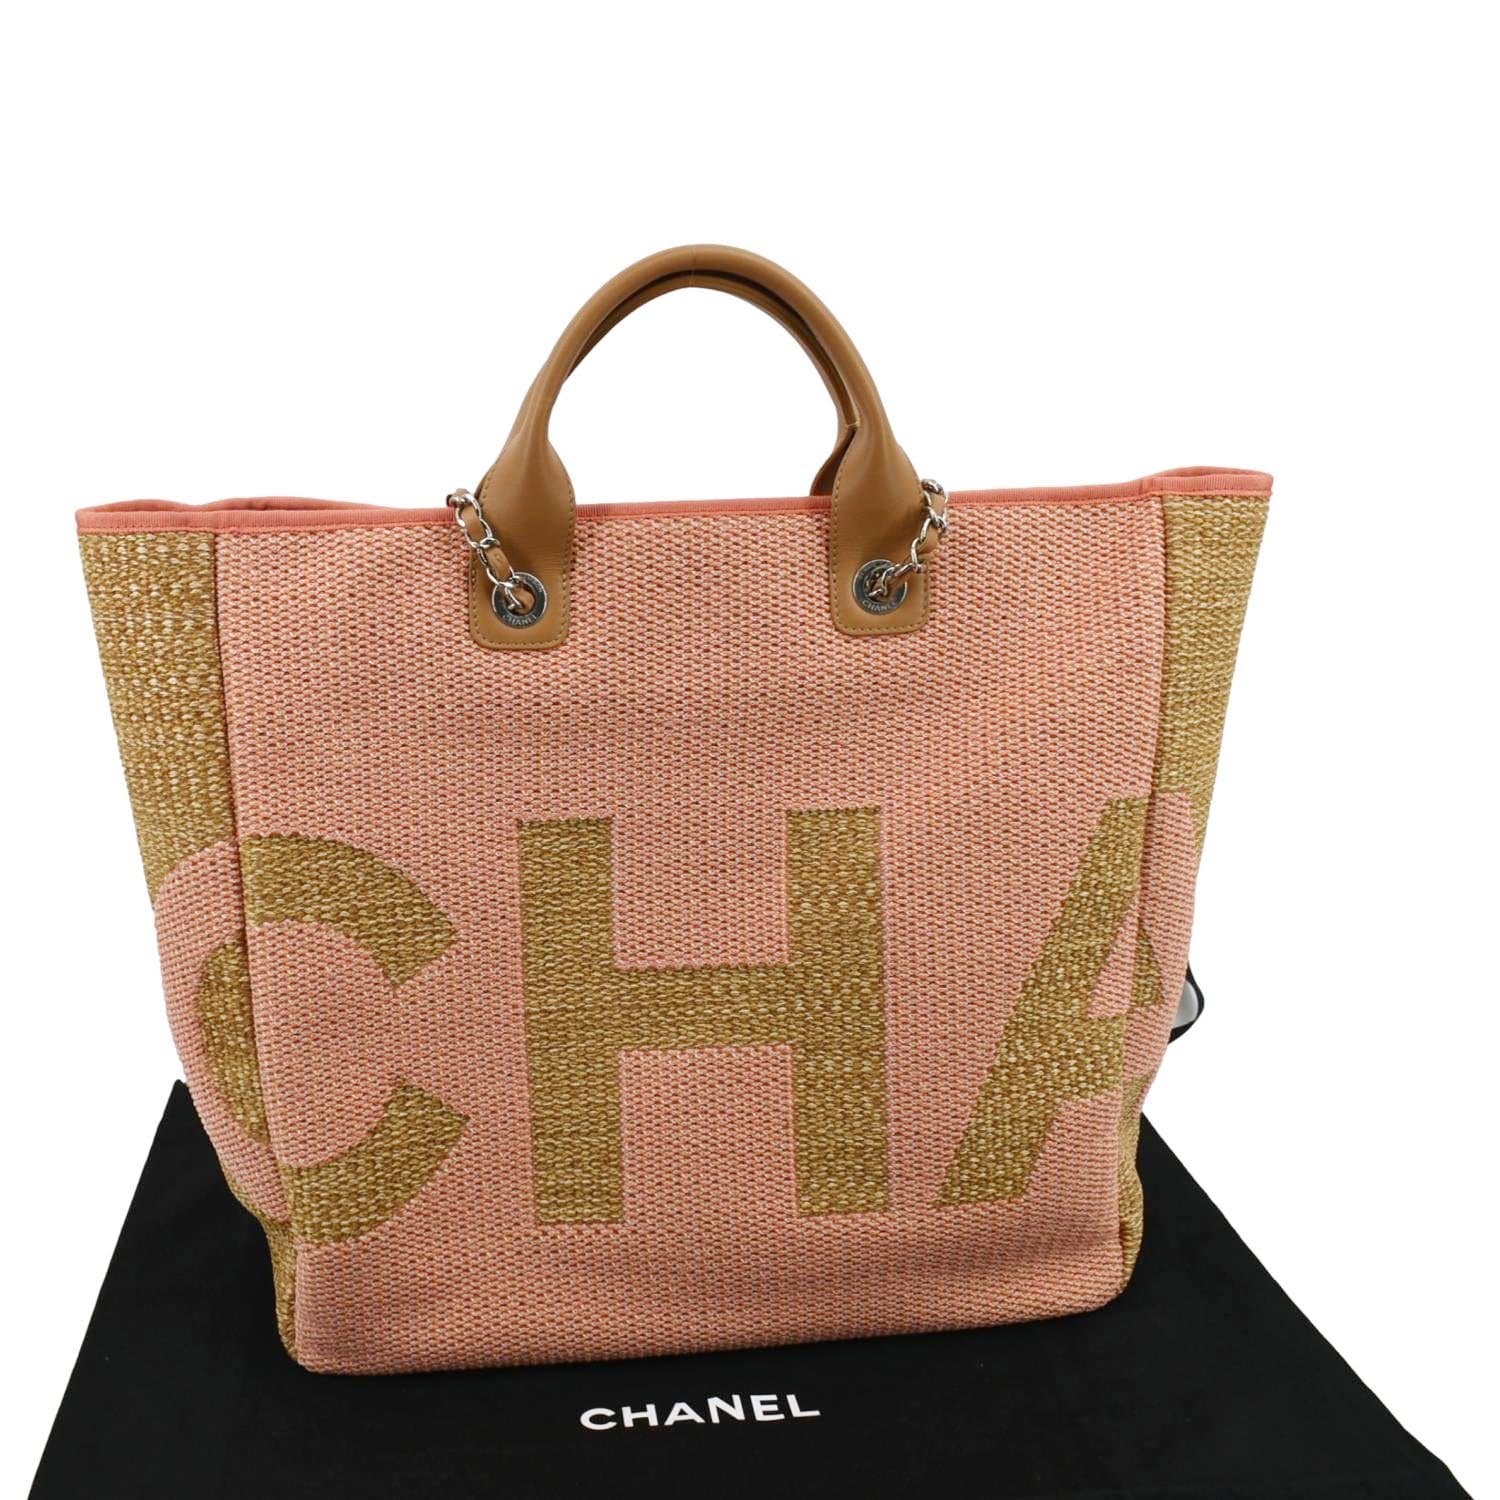 pink chanel canvas tote handbag